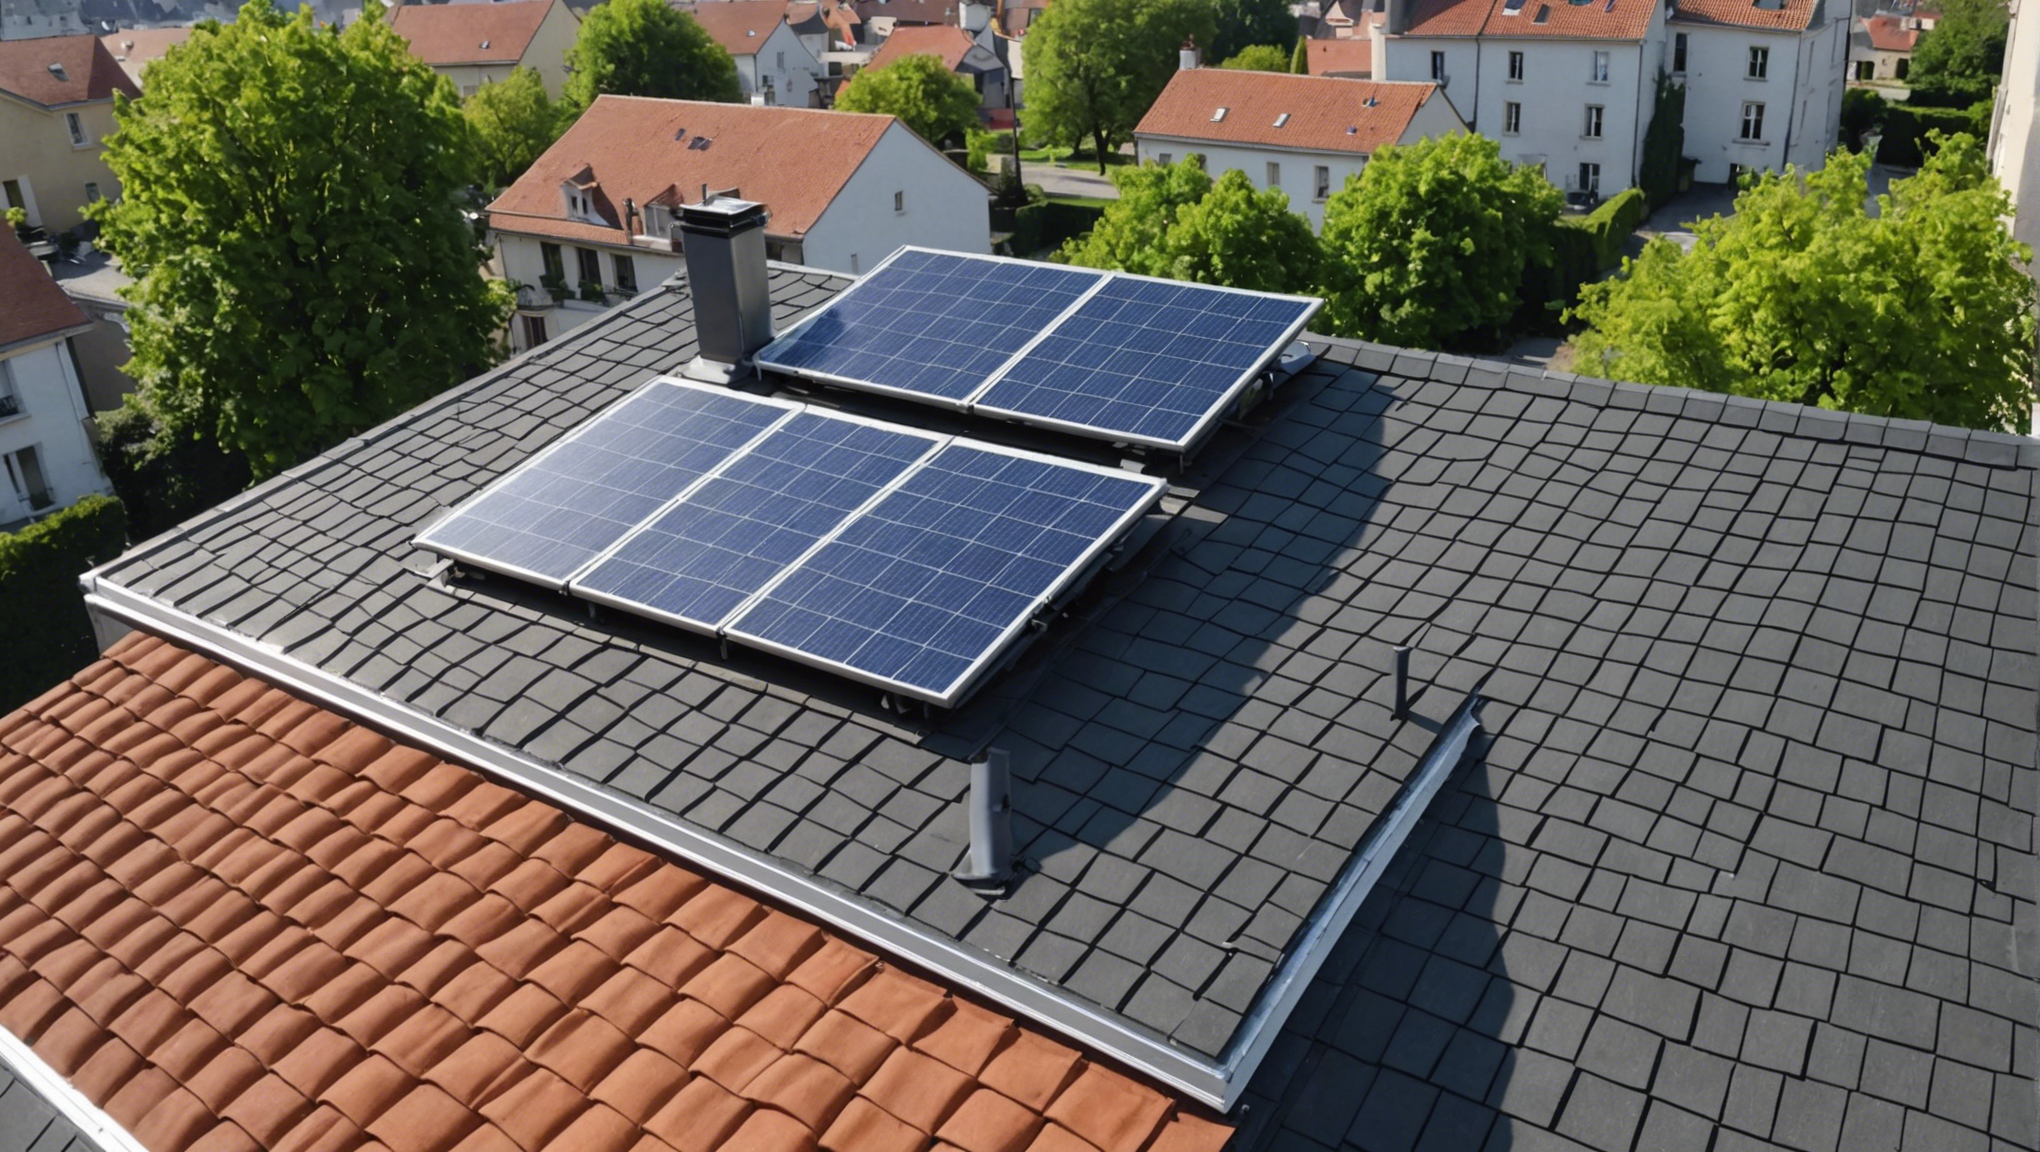 découvrez comment l'isolation thermofiber france peut significativement améliorer l'efficacité énergétique de votre toiture et vous permettre de réaliser des économies d'énergie.